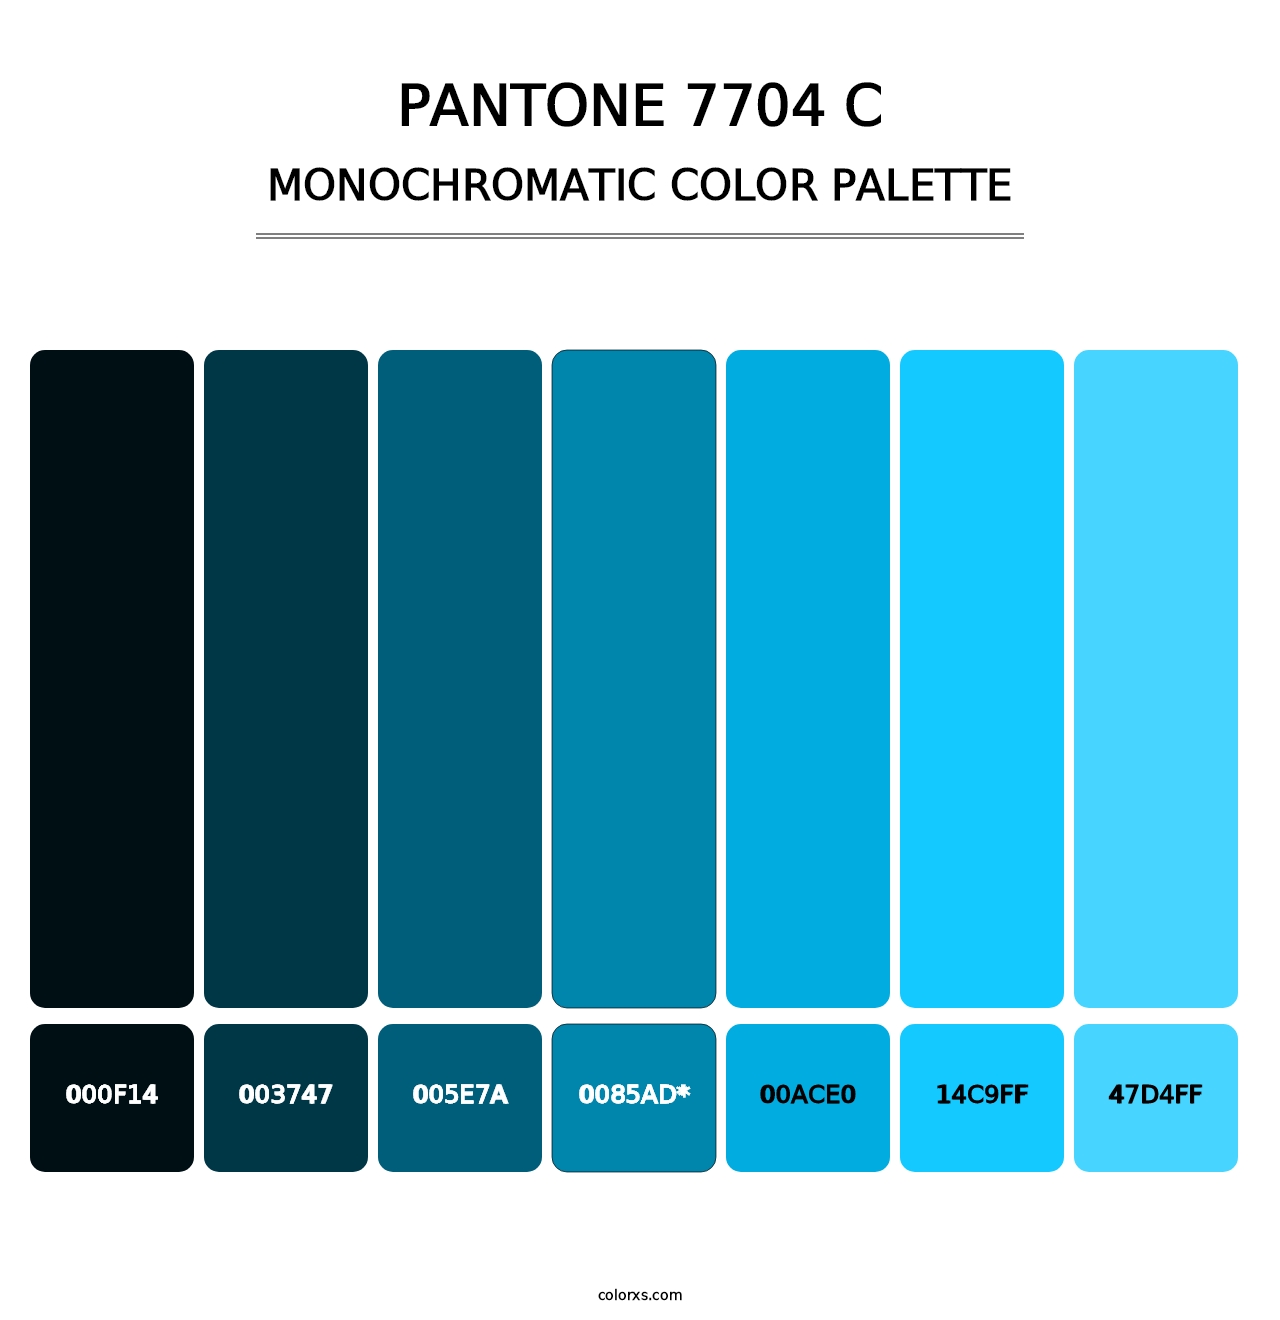 PANTONE 7704 C - Monochromatic Color Palette